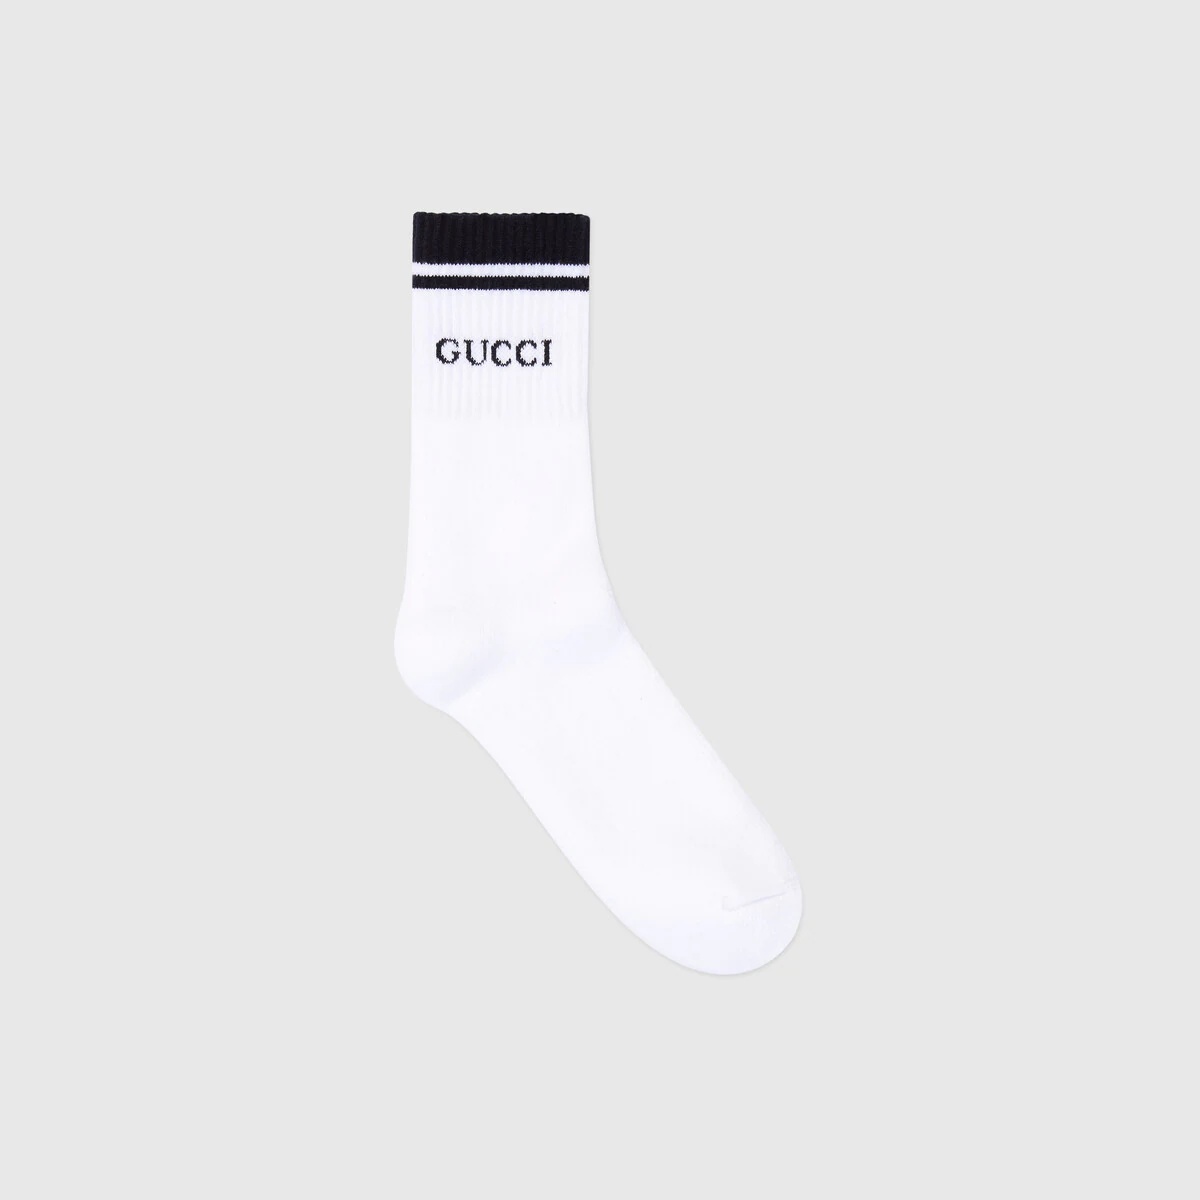 Cotton Gucci socks - 1